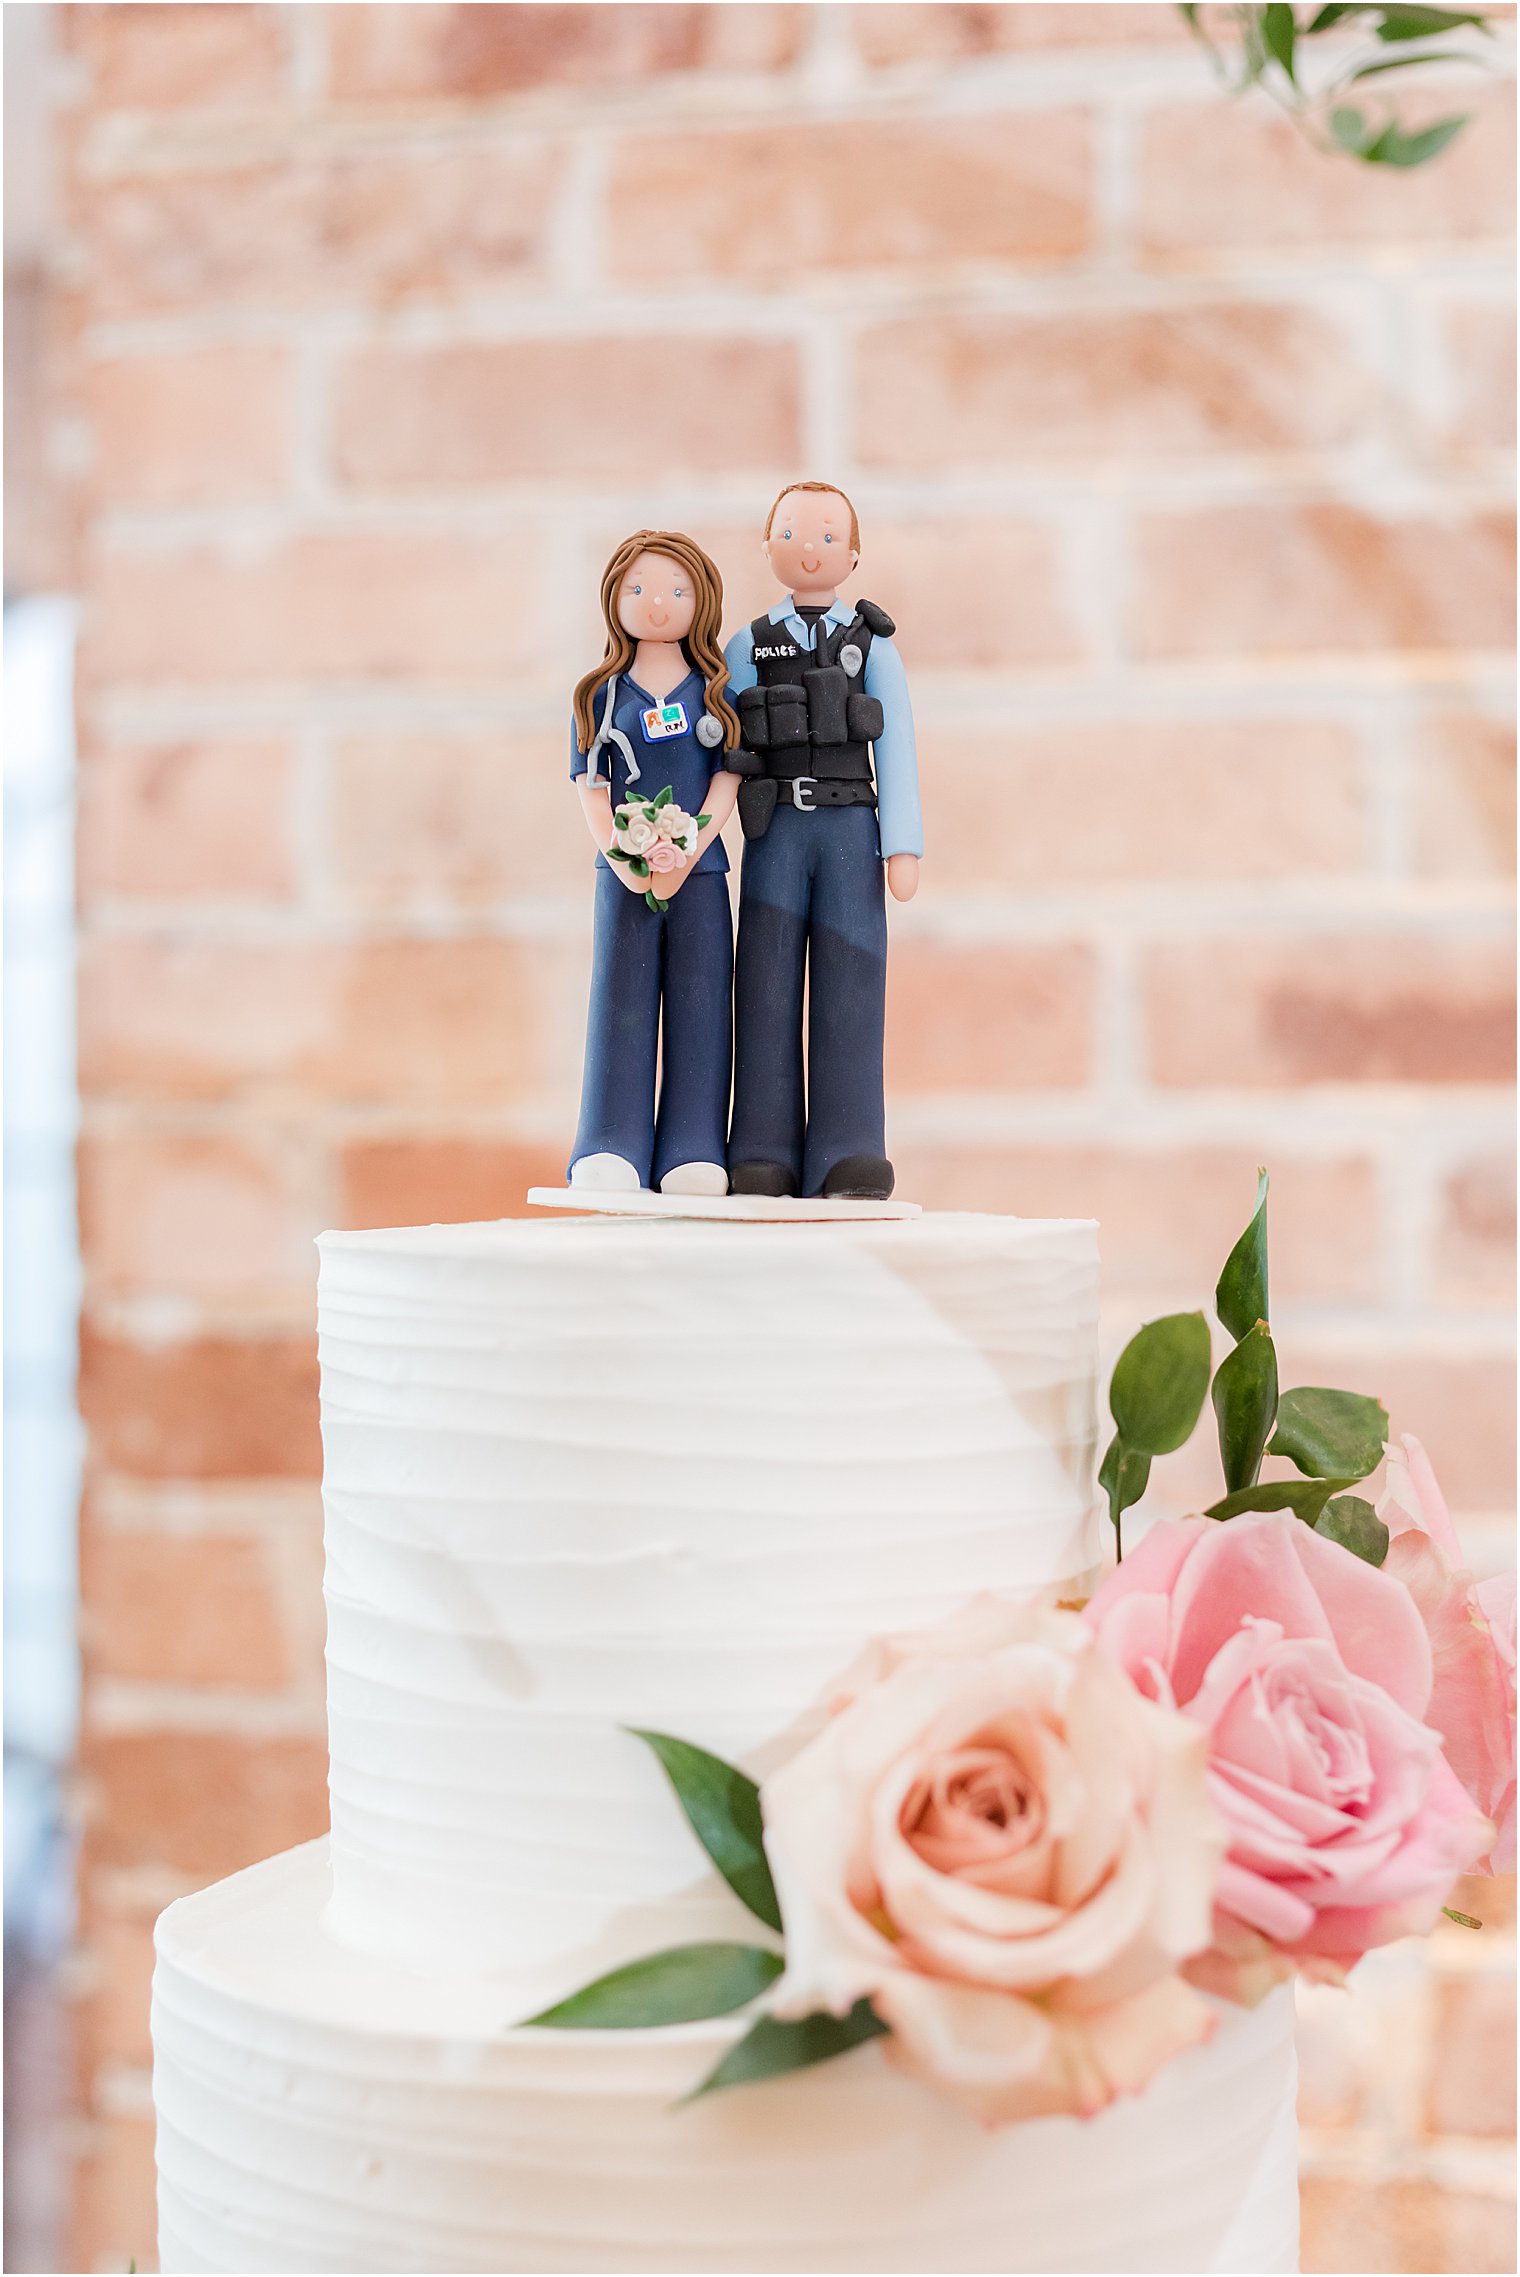 custom wedding cake topper for police officer